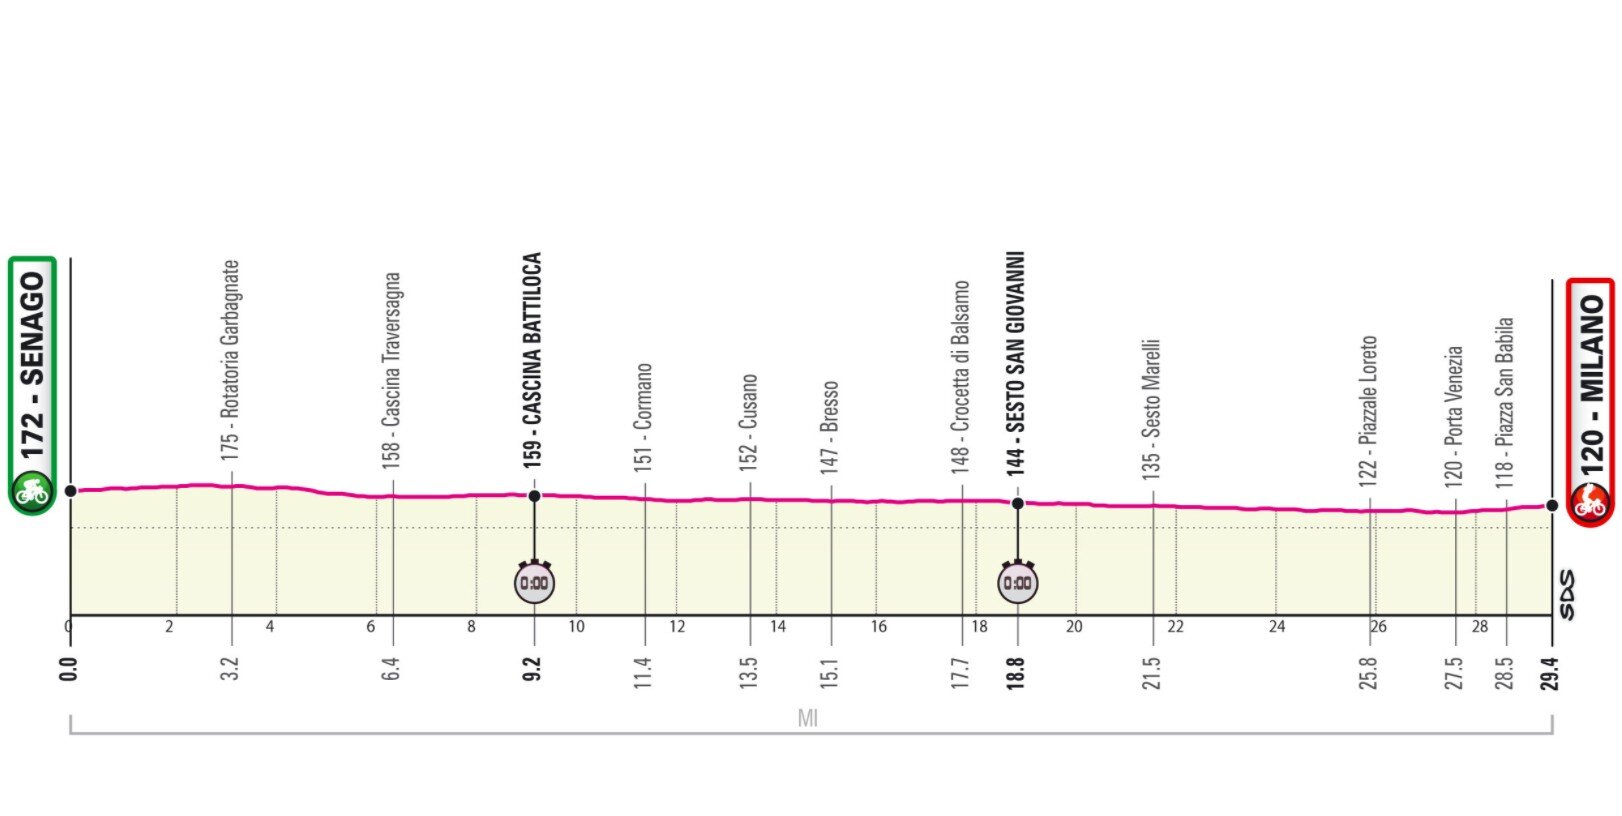 Stage 21 Giro Italia 2021